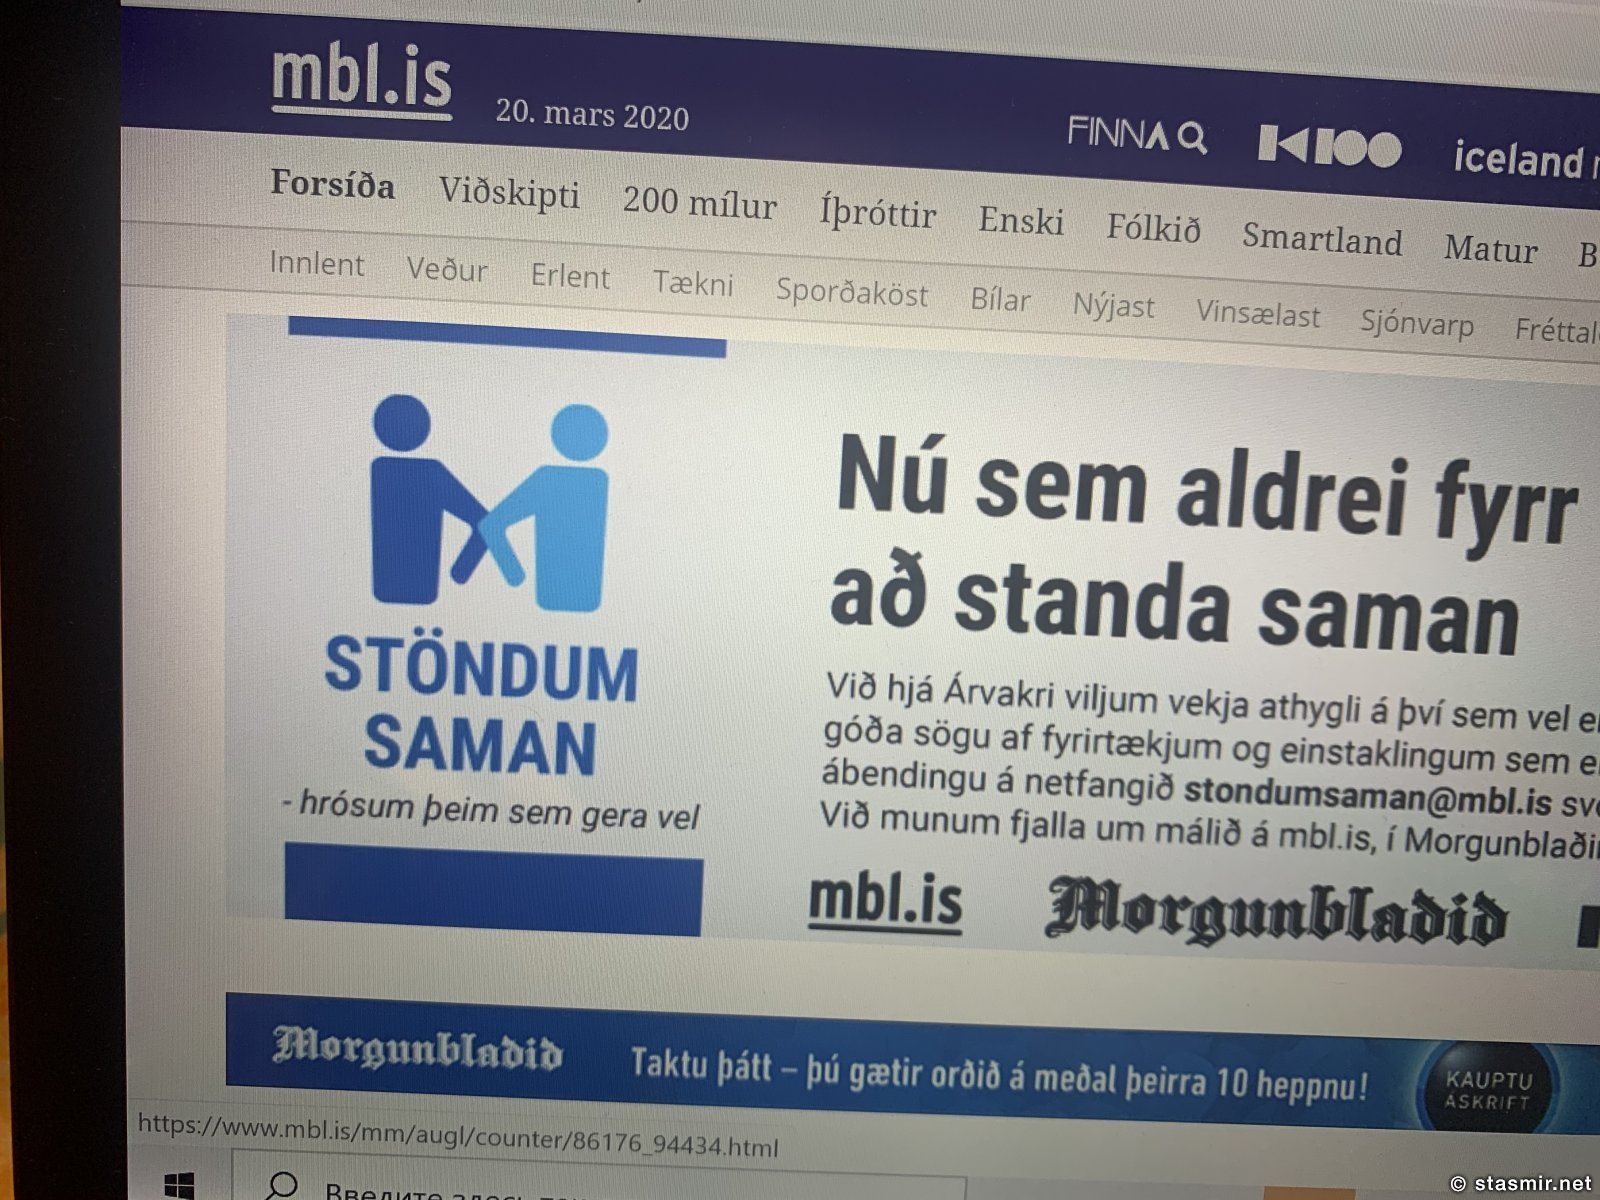 Логотип "Stöndum saman" на mbl.is - стоим вместе, но соприкасаемся локтями - без социальной дистанции, фото Стасмир, photo Stasmir